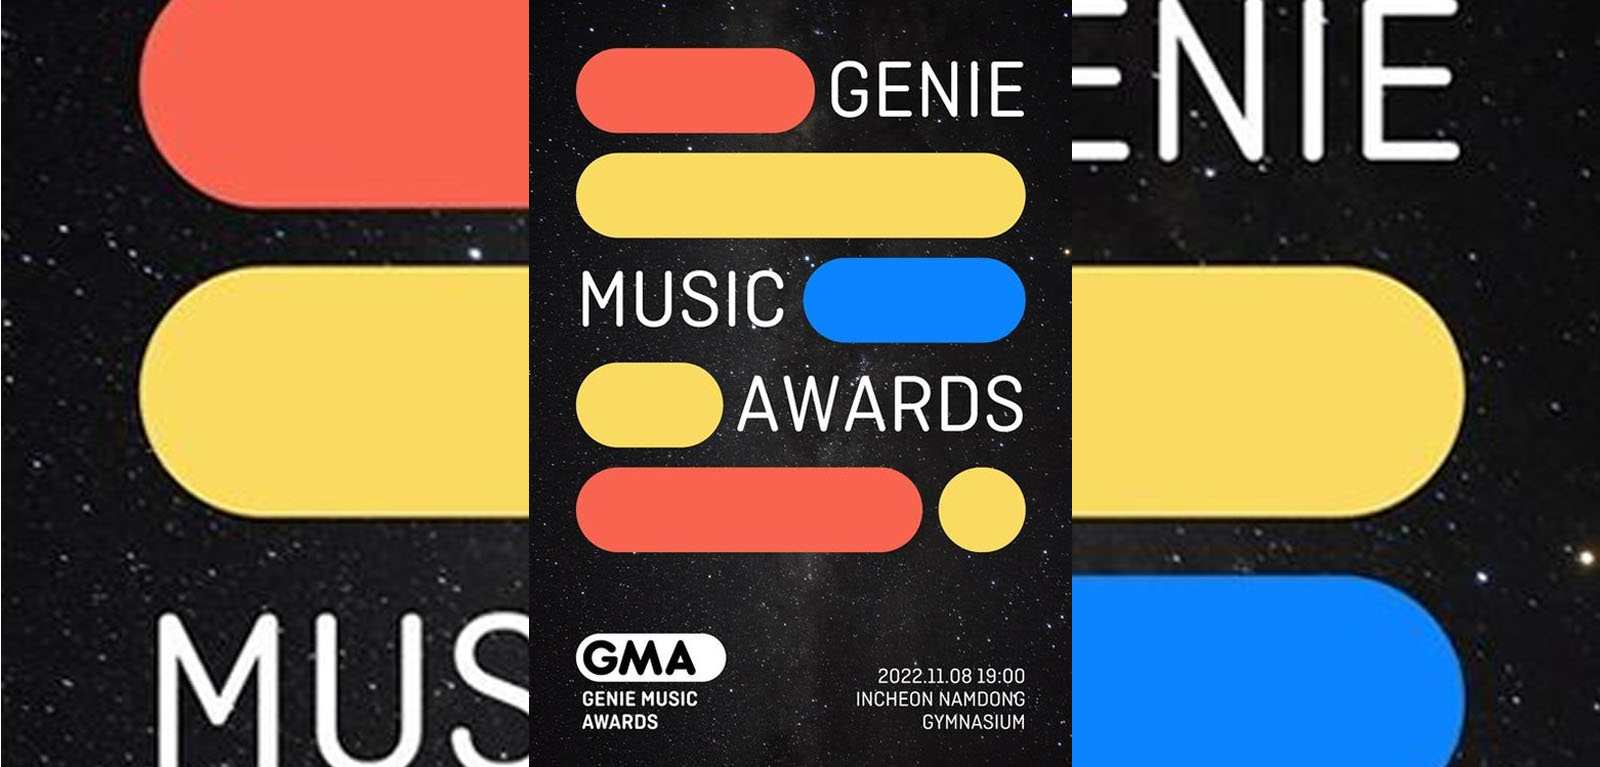 Les Genie Music Awards 2022 annulent leur tapis rouge suite à la